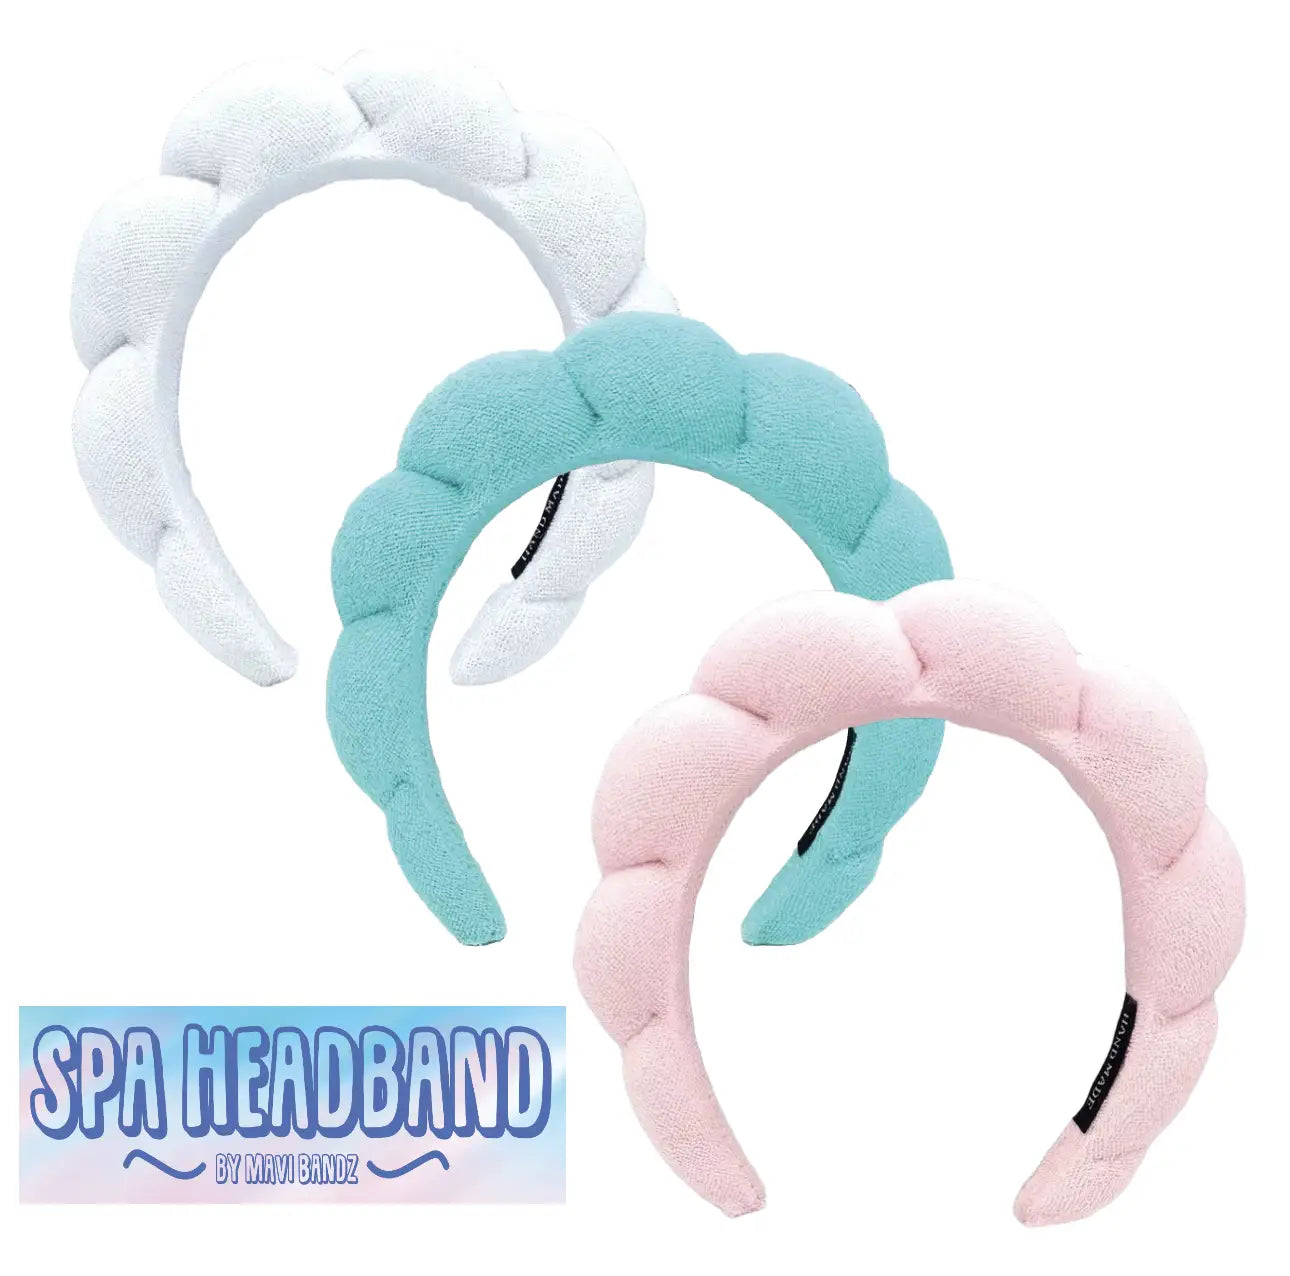 Terry Cloth Spa Headband – BabyBliss